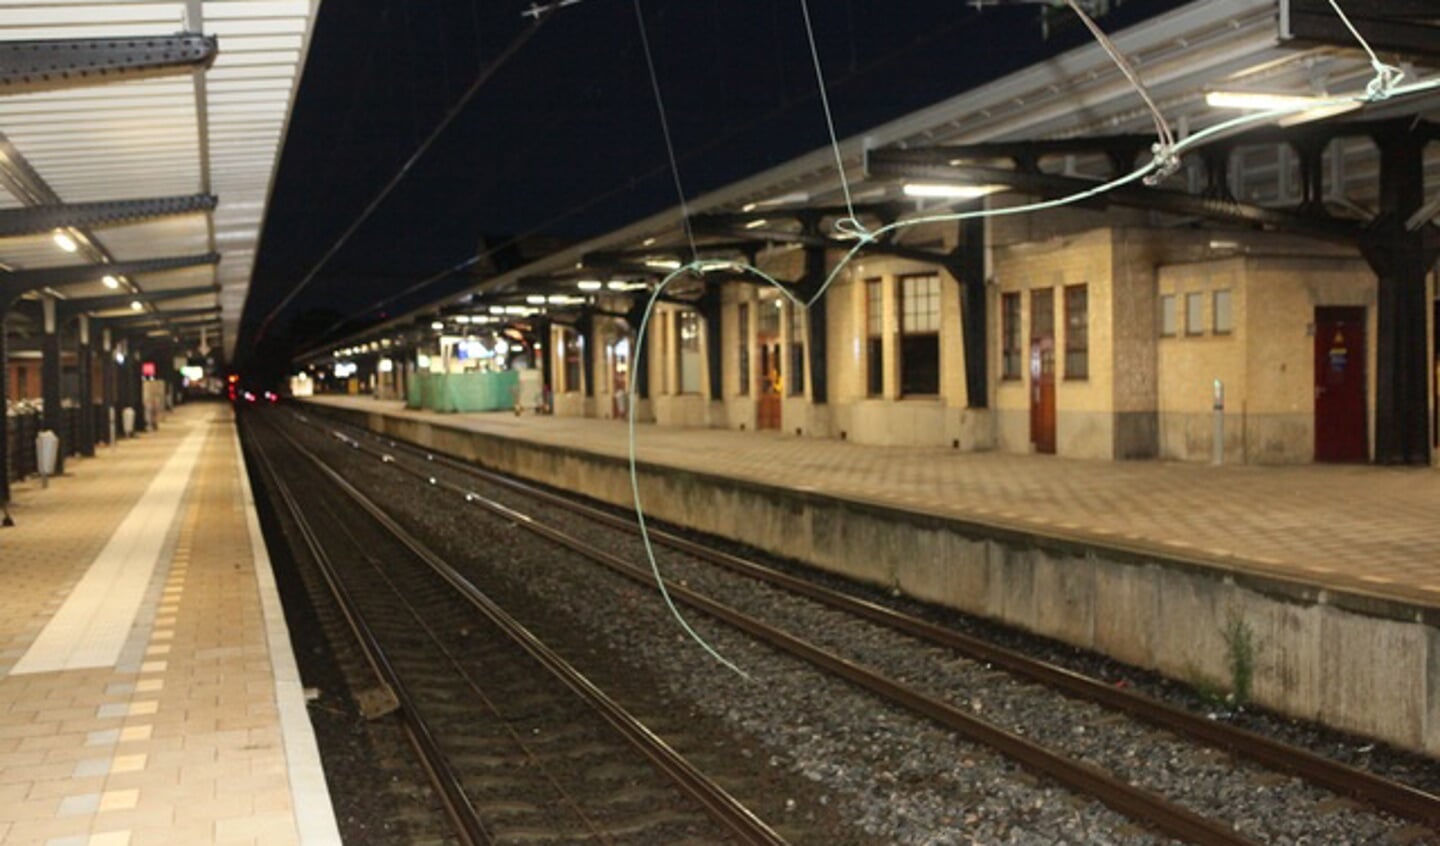 Blikseminslag op station Naarden Bussum, de bovenleiding hangt er onbeschermd